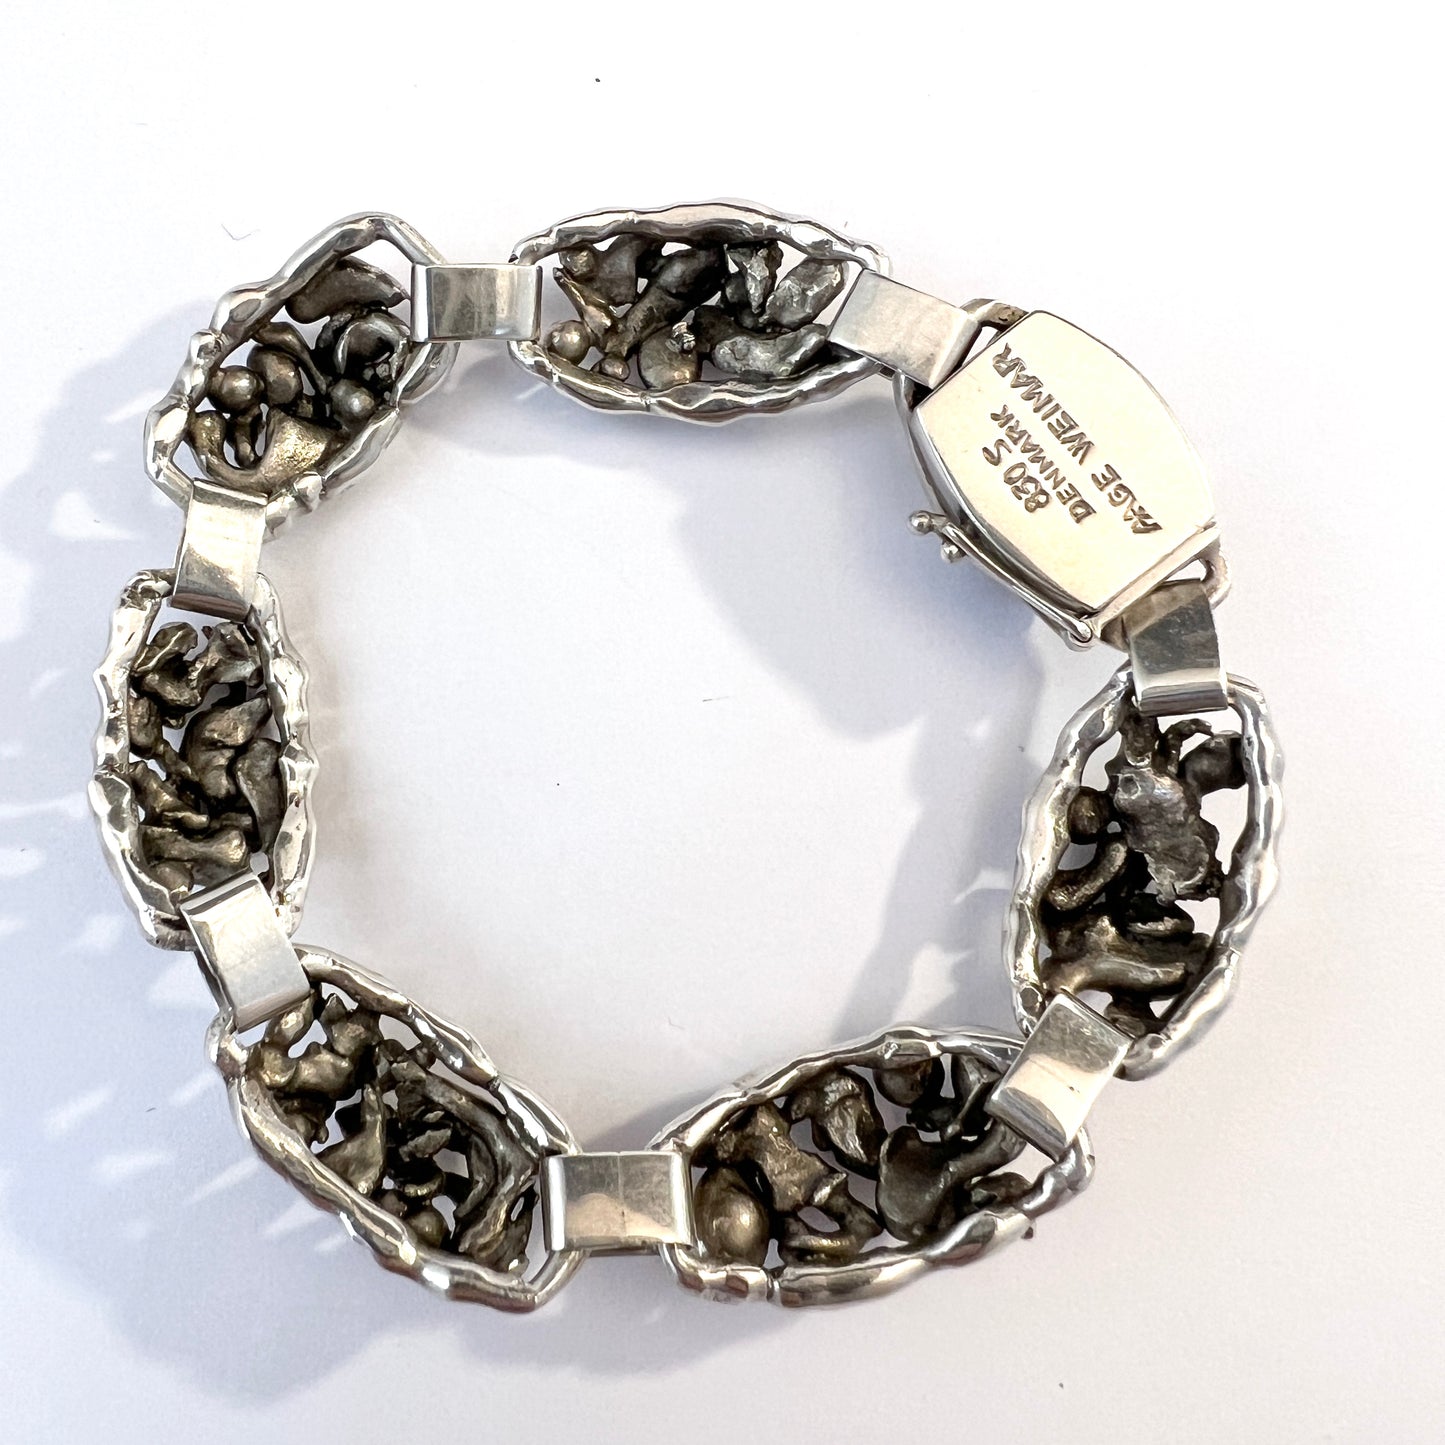 Aage Weimar, Copenhagen Denmark 1940-50s Solid Silver Bracelet.